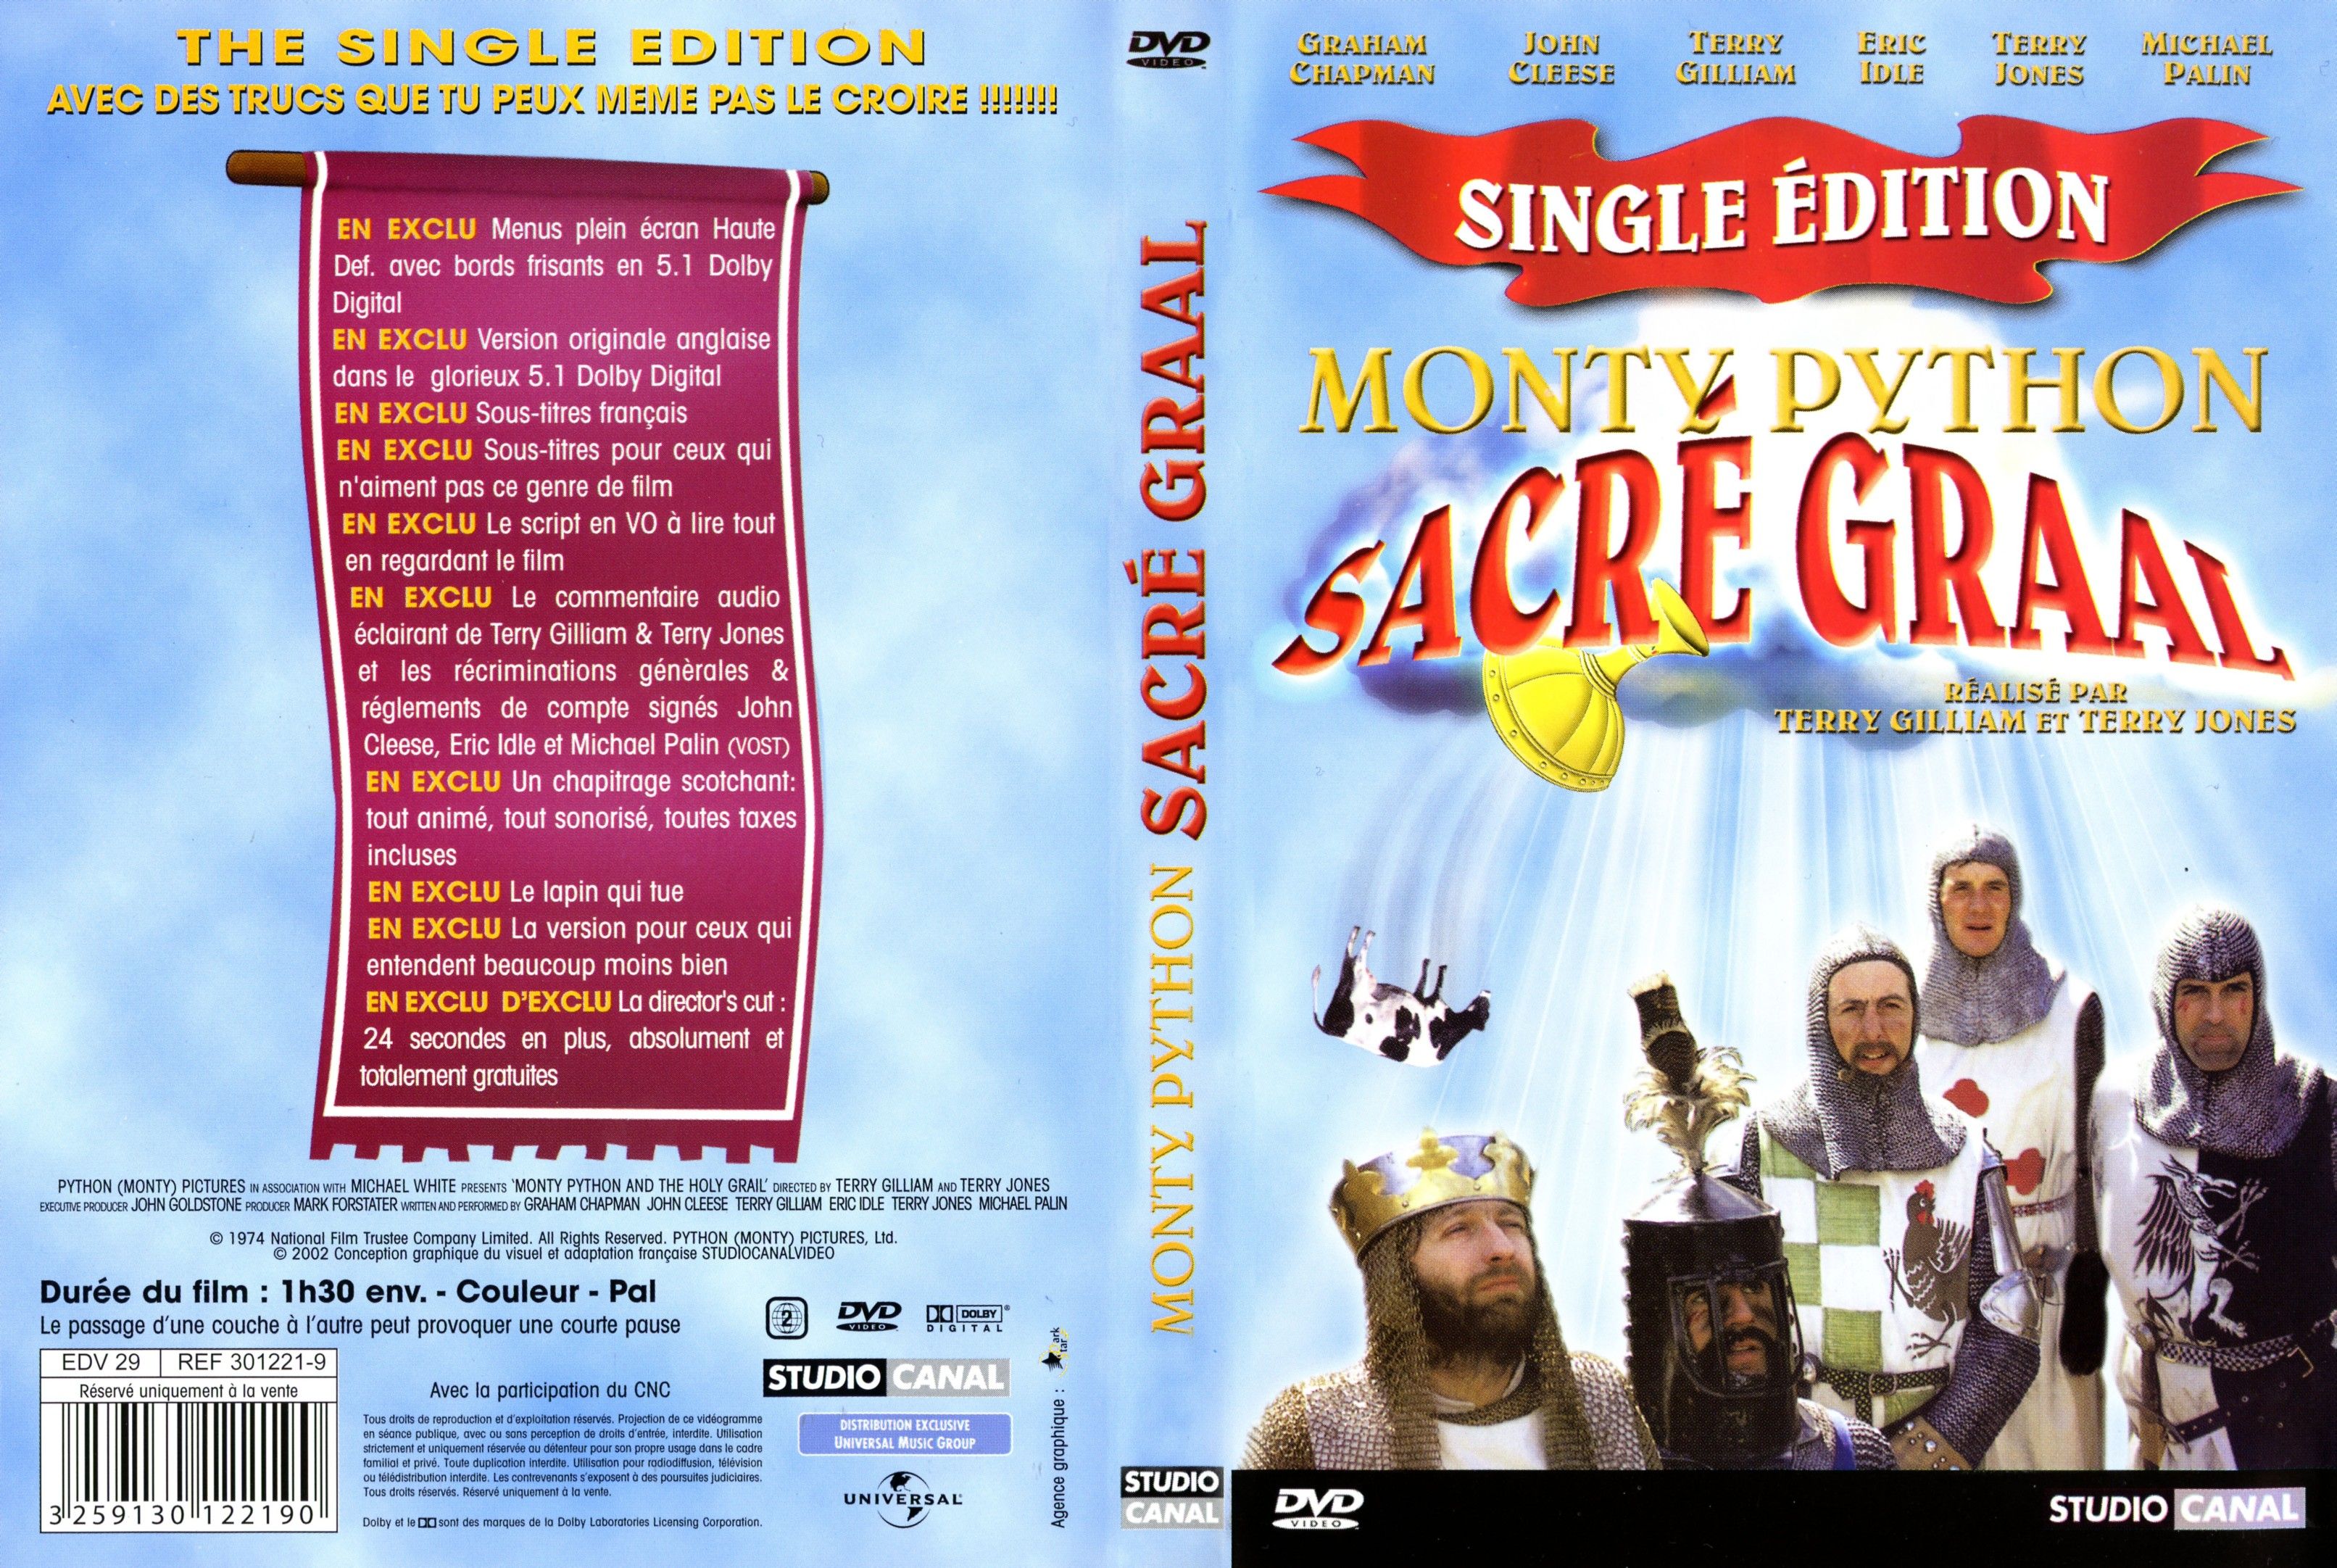 Jaquette DVD Monty Python - Sacr Graal v2